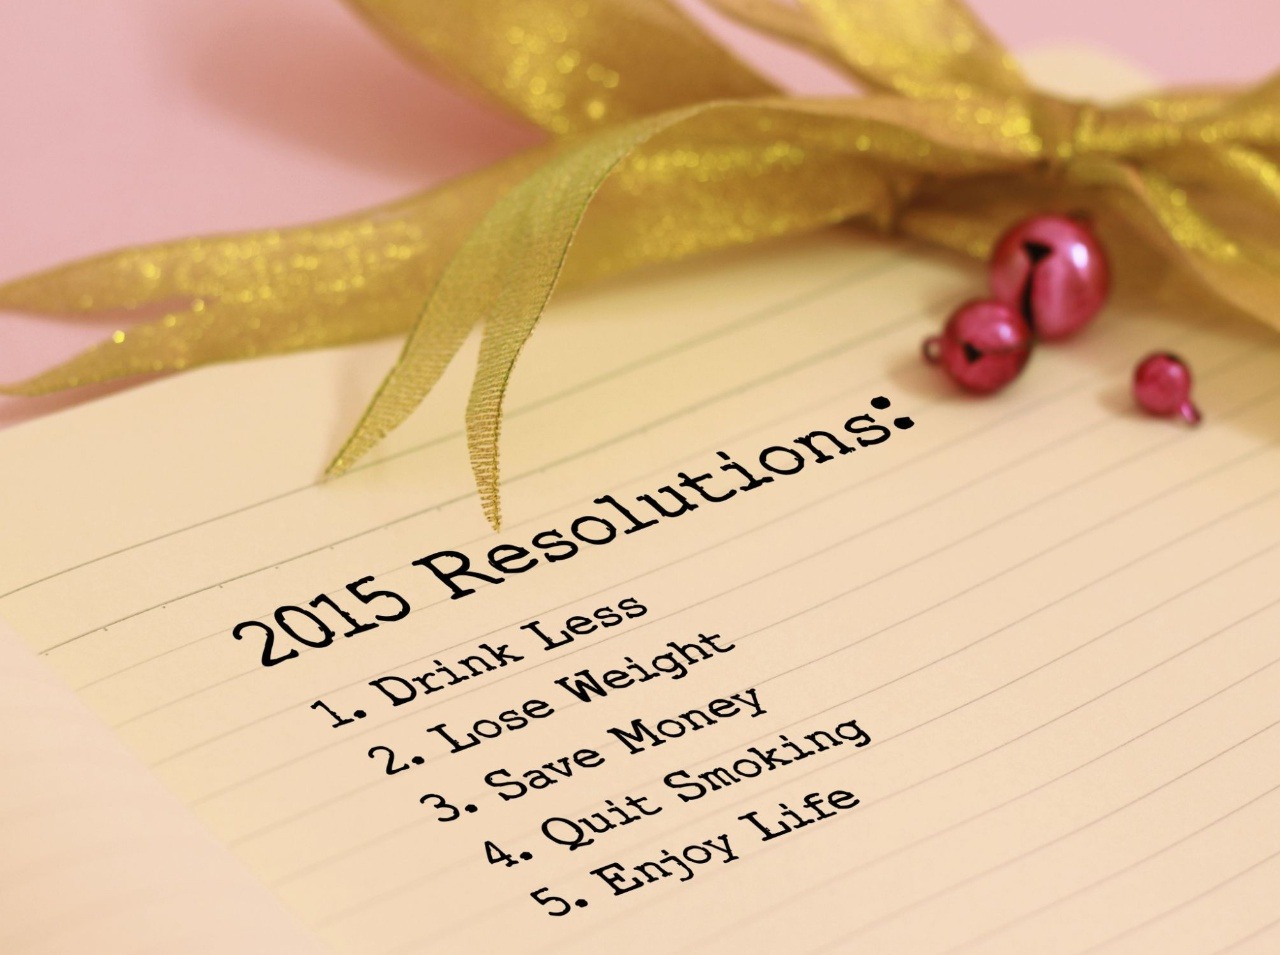 Dodržiavajte niektoré predsavzatia v novom roku a môžete sa tešiť z príjemných zmien!